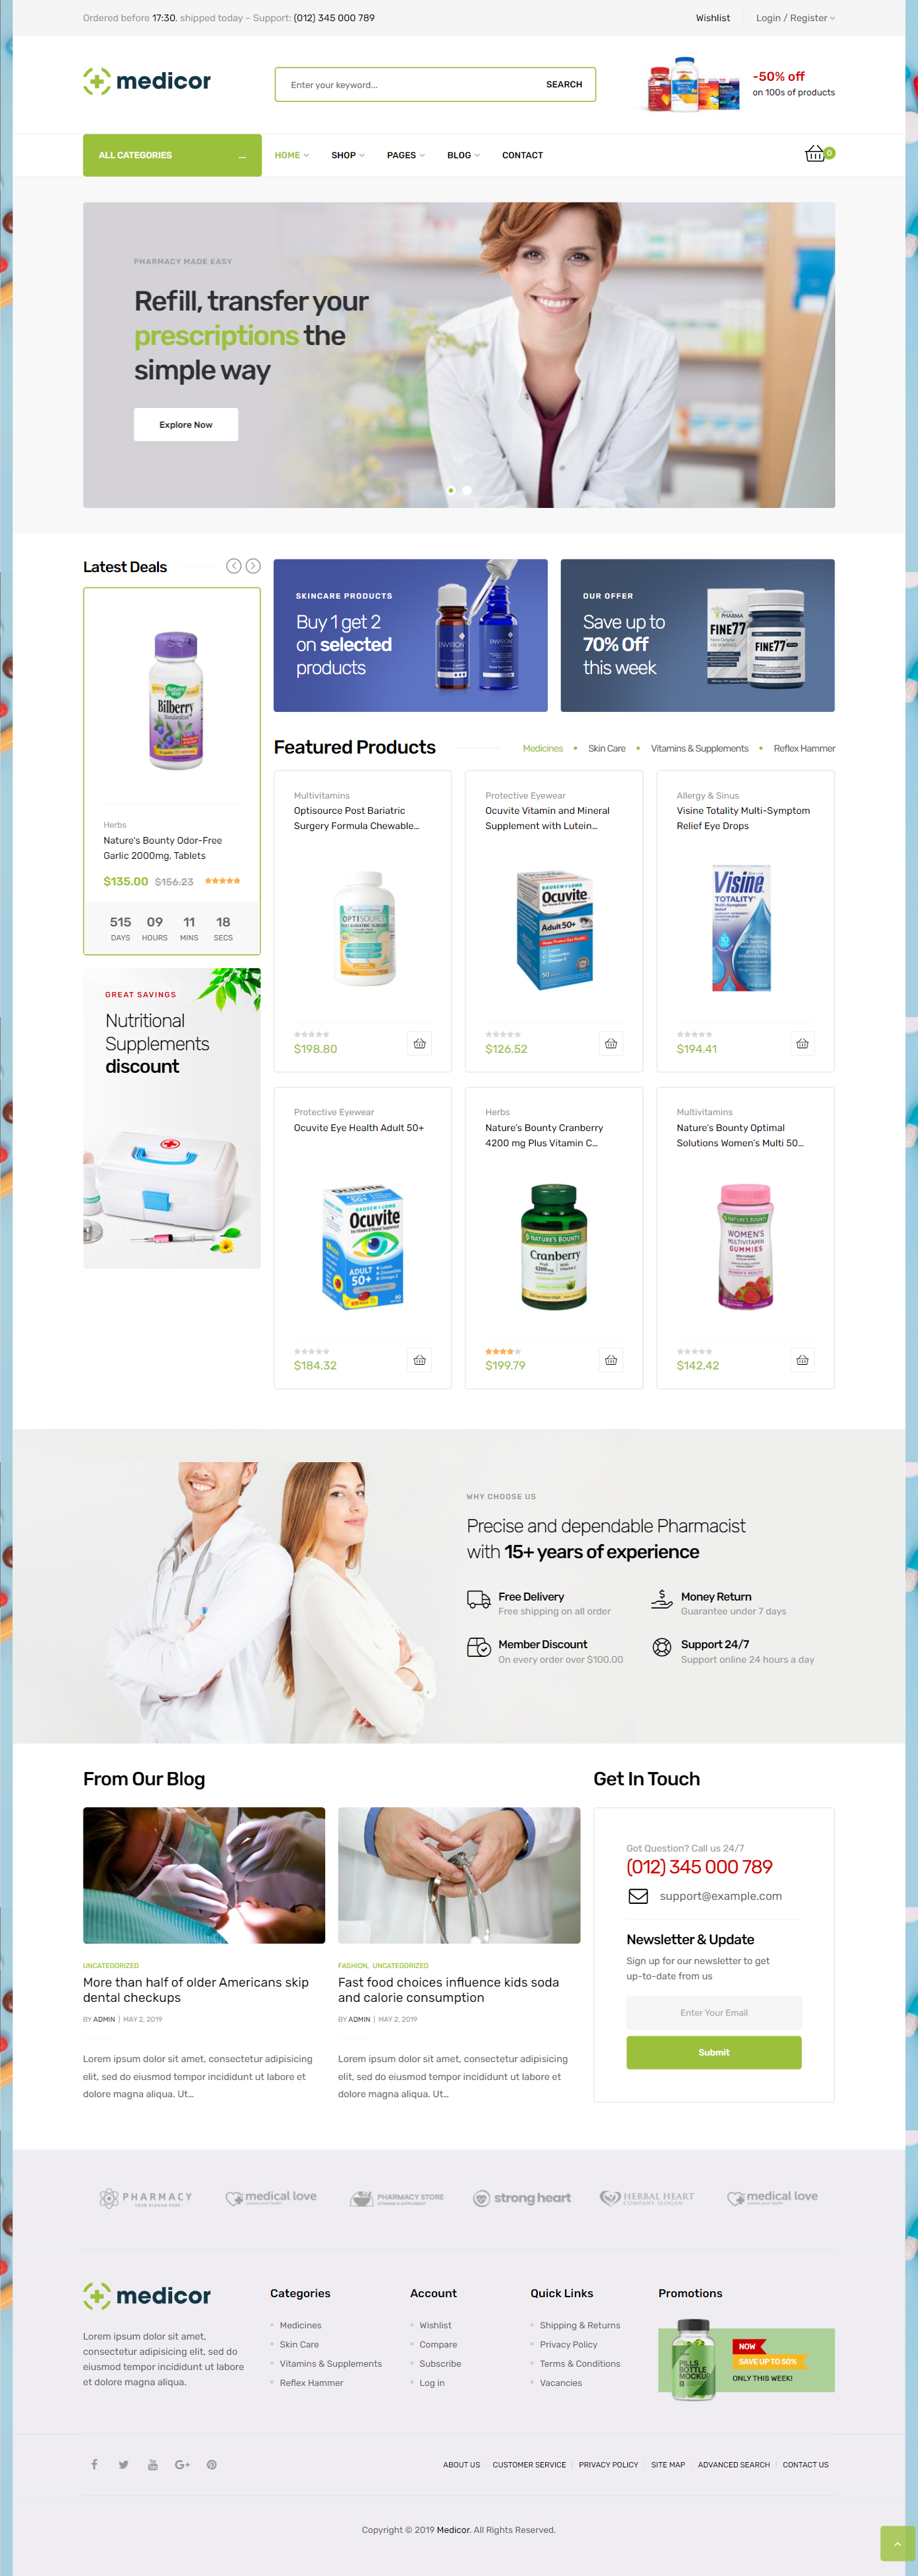 mẫu giao diện website y tế medicor